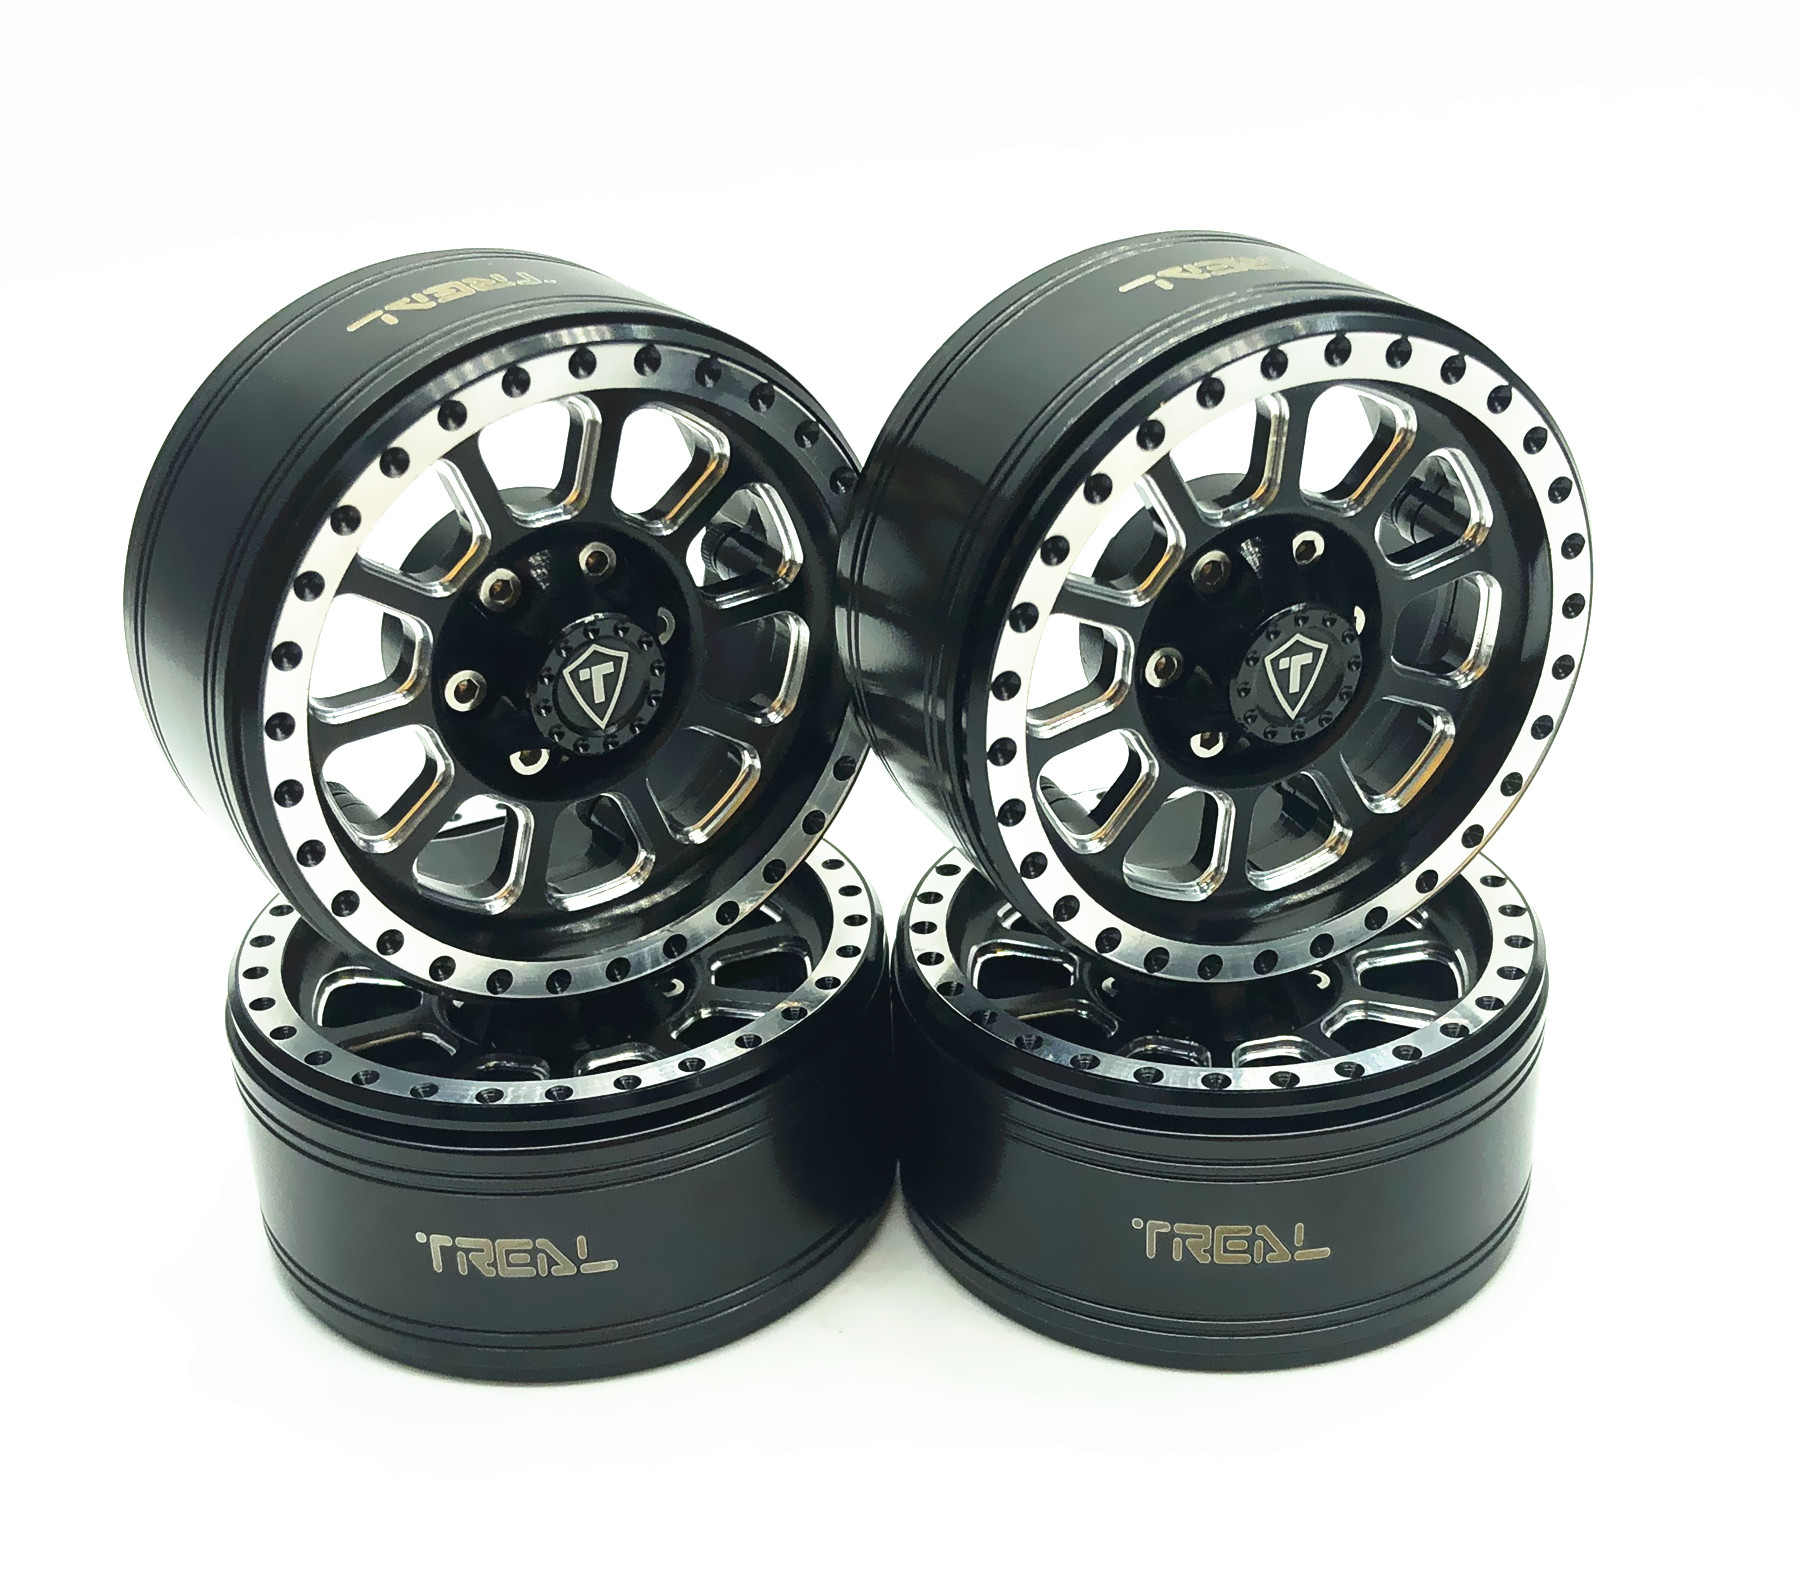 1.9 Beadlock Wheels Rims for Axial SCX10 SCX10 II 90046 SCX10 III AXI03007 Traxxas TRX4 D90,CNC Aluminum Alloy,4PCS/Set 